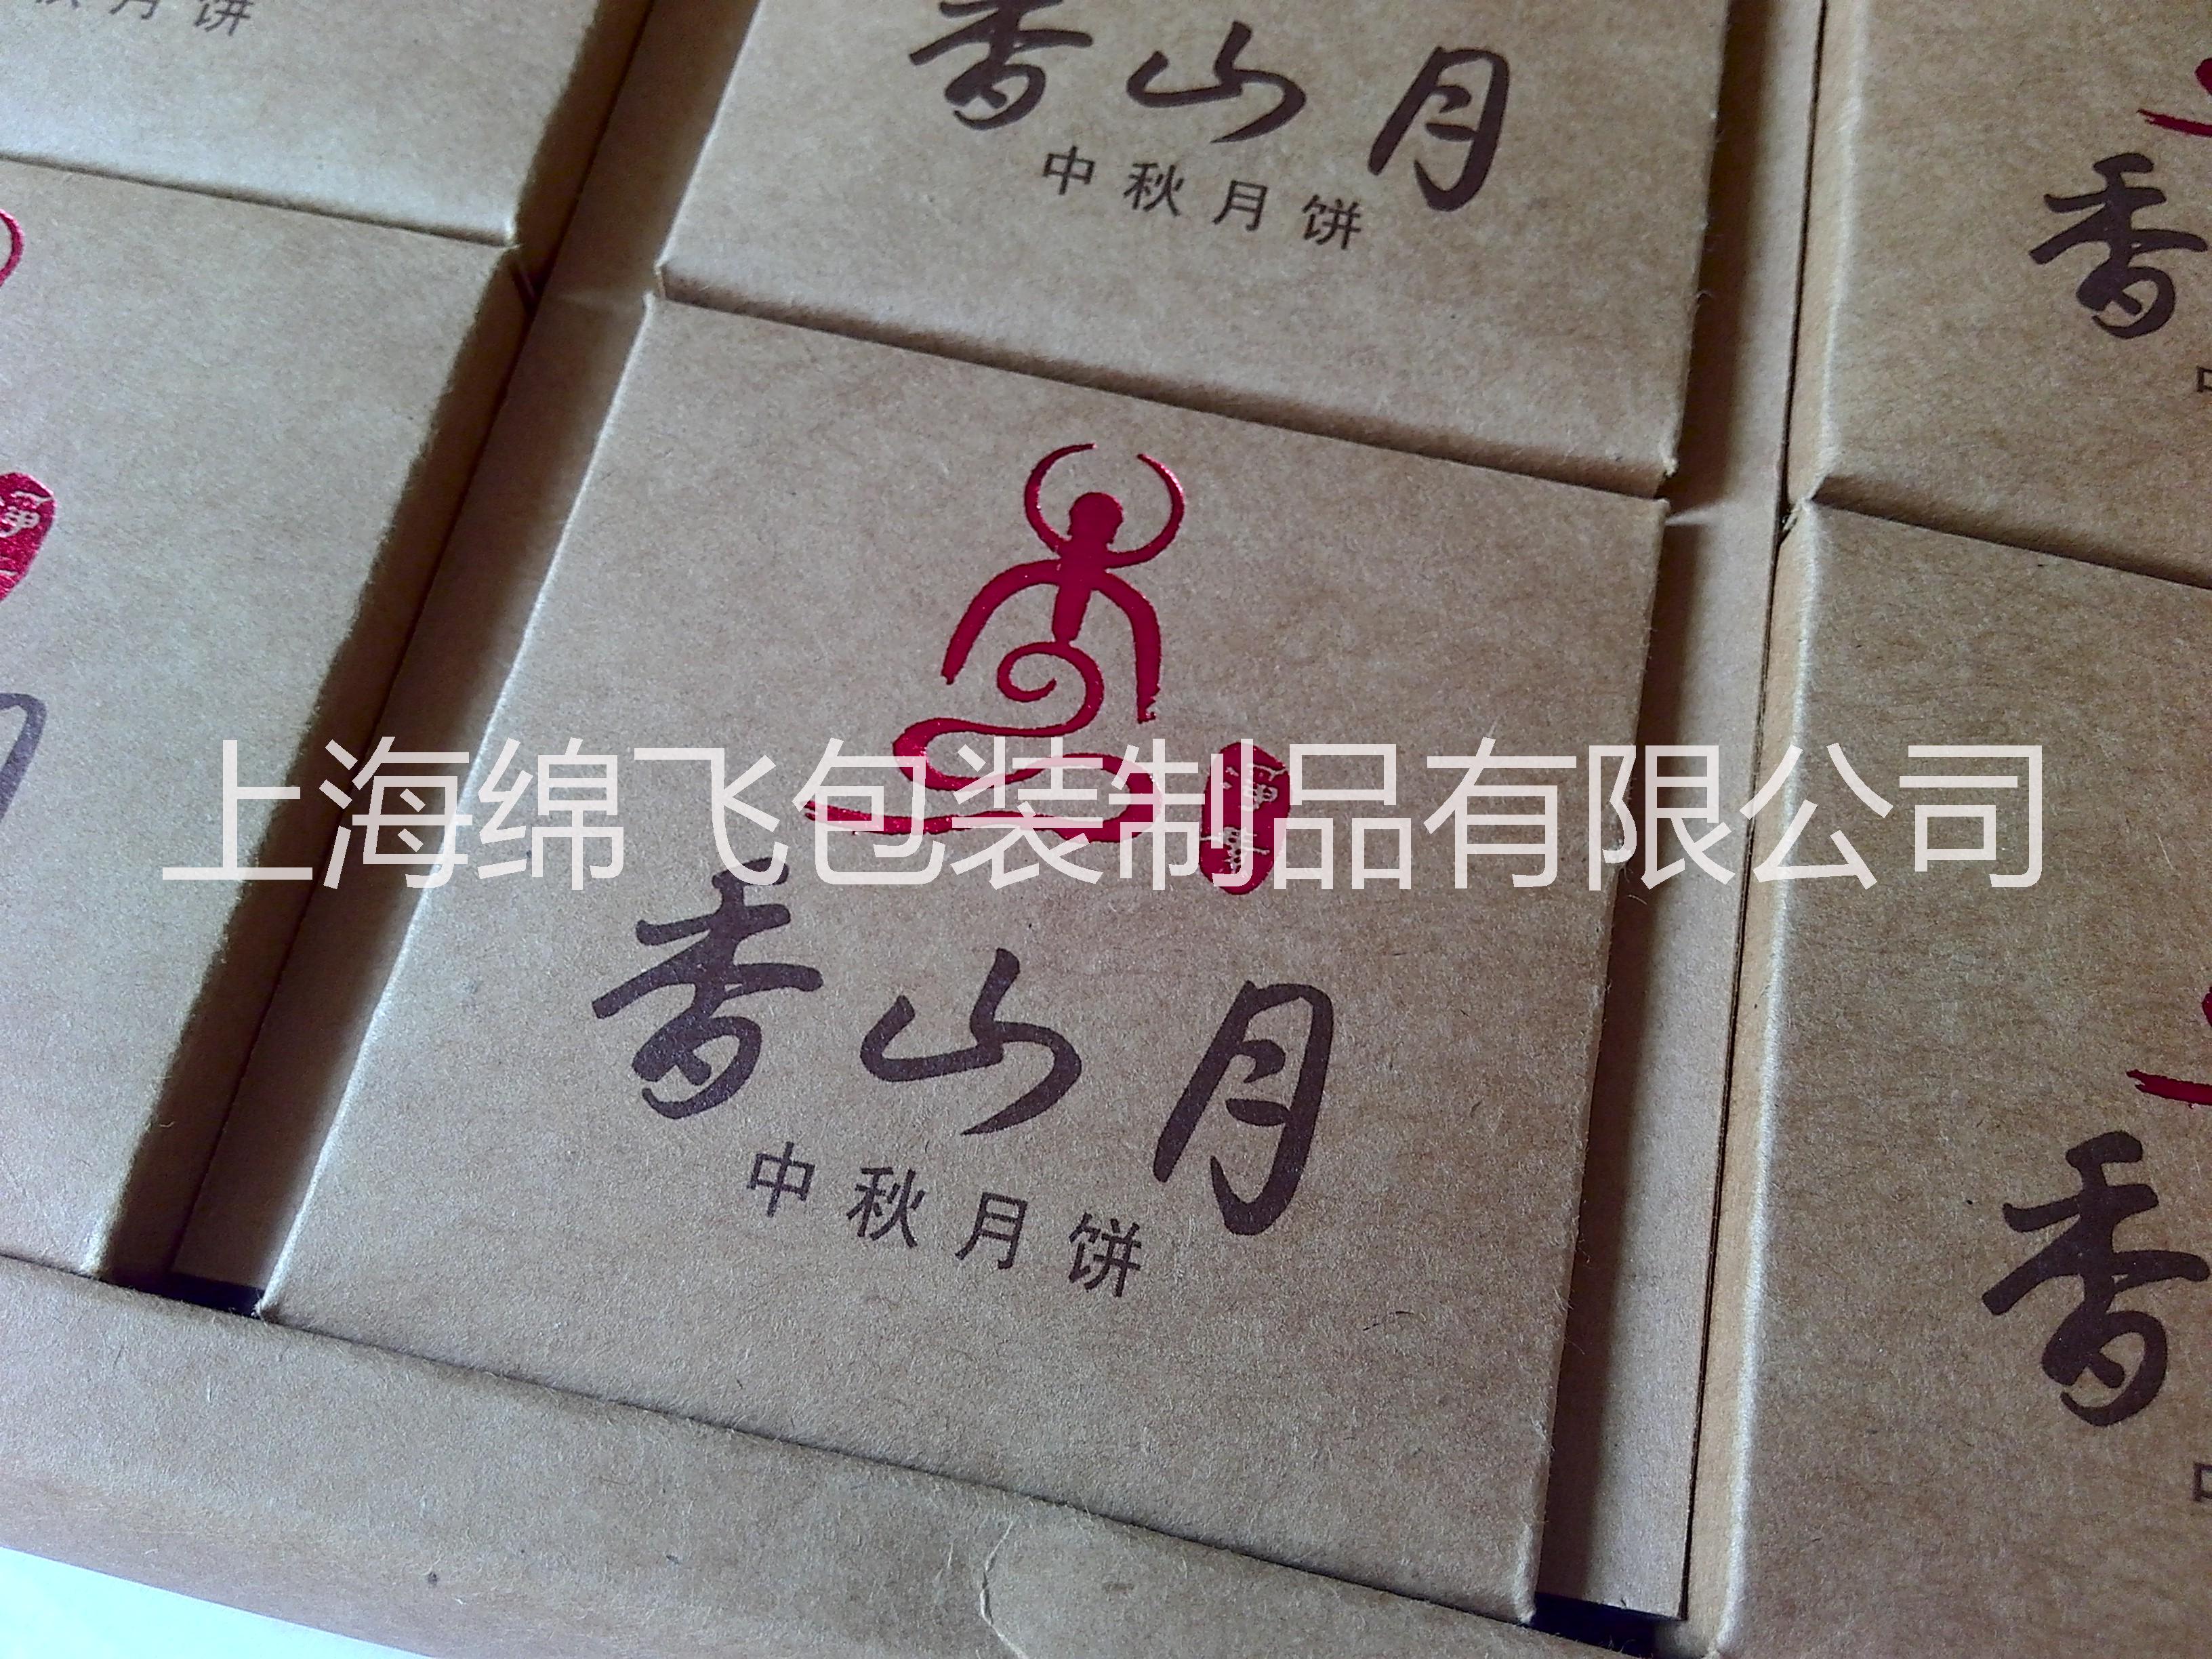 上海市厂家订制糕点包装盒厂家